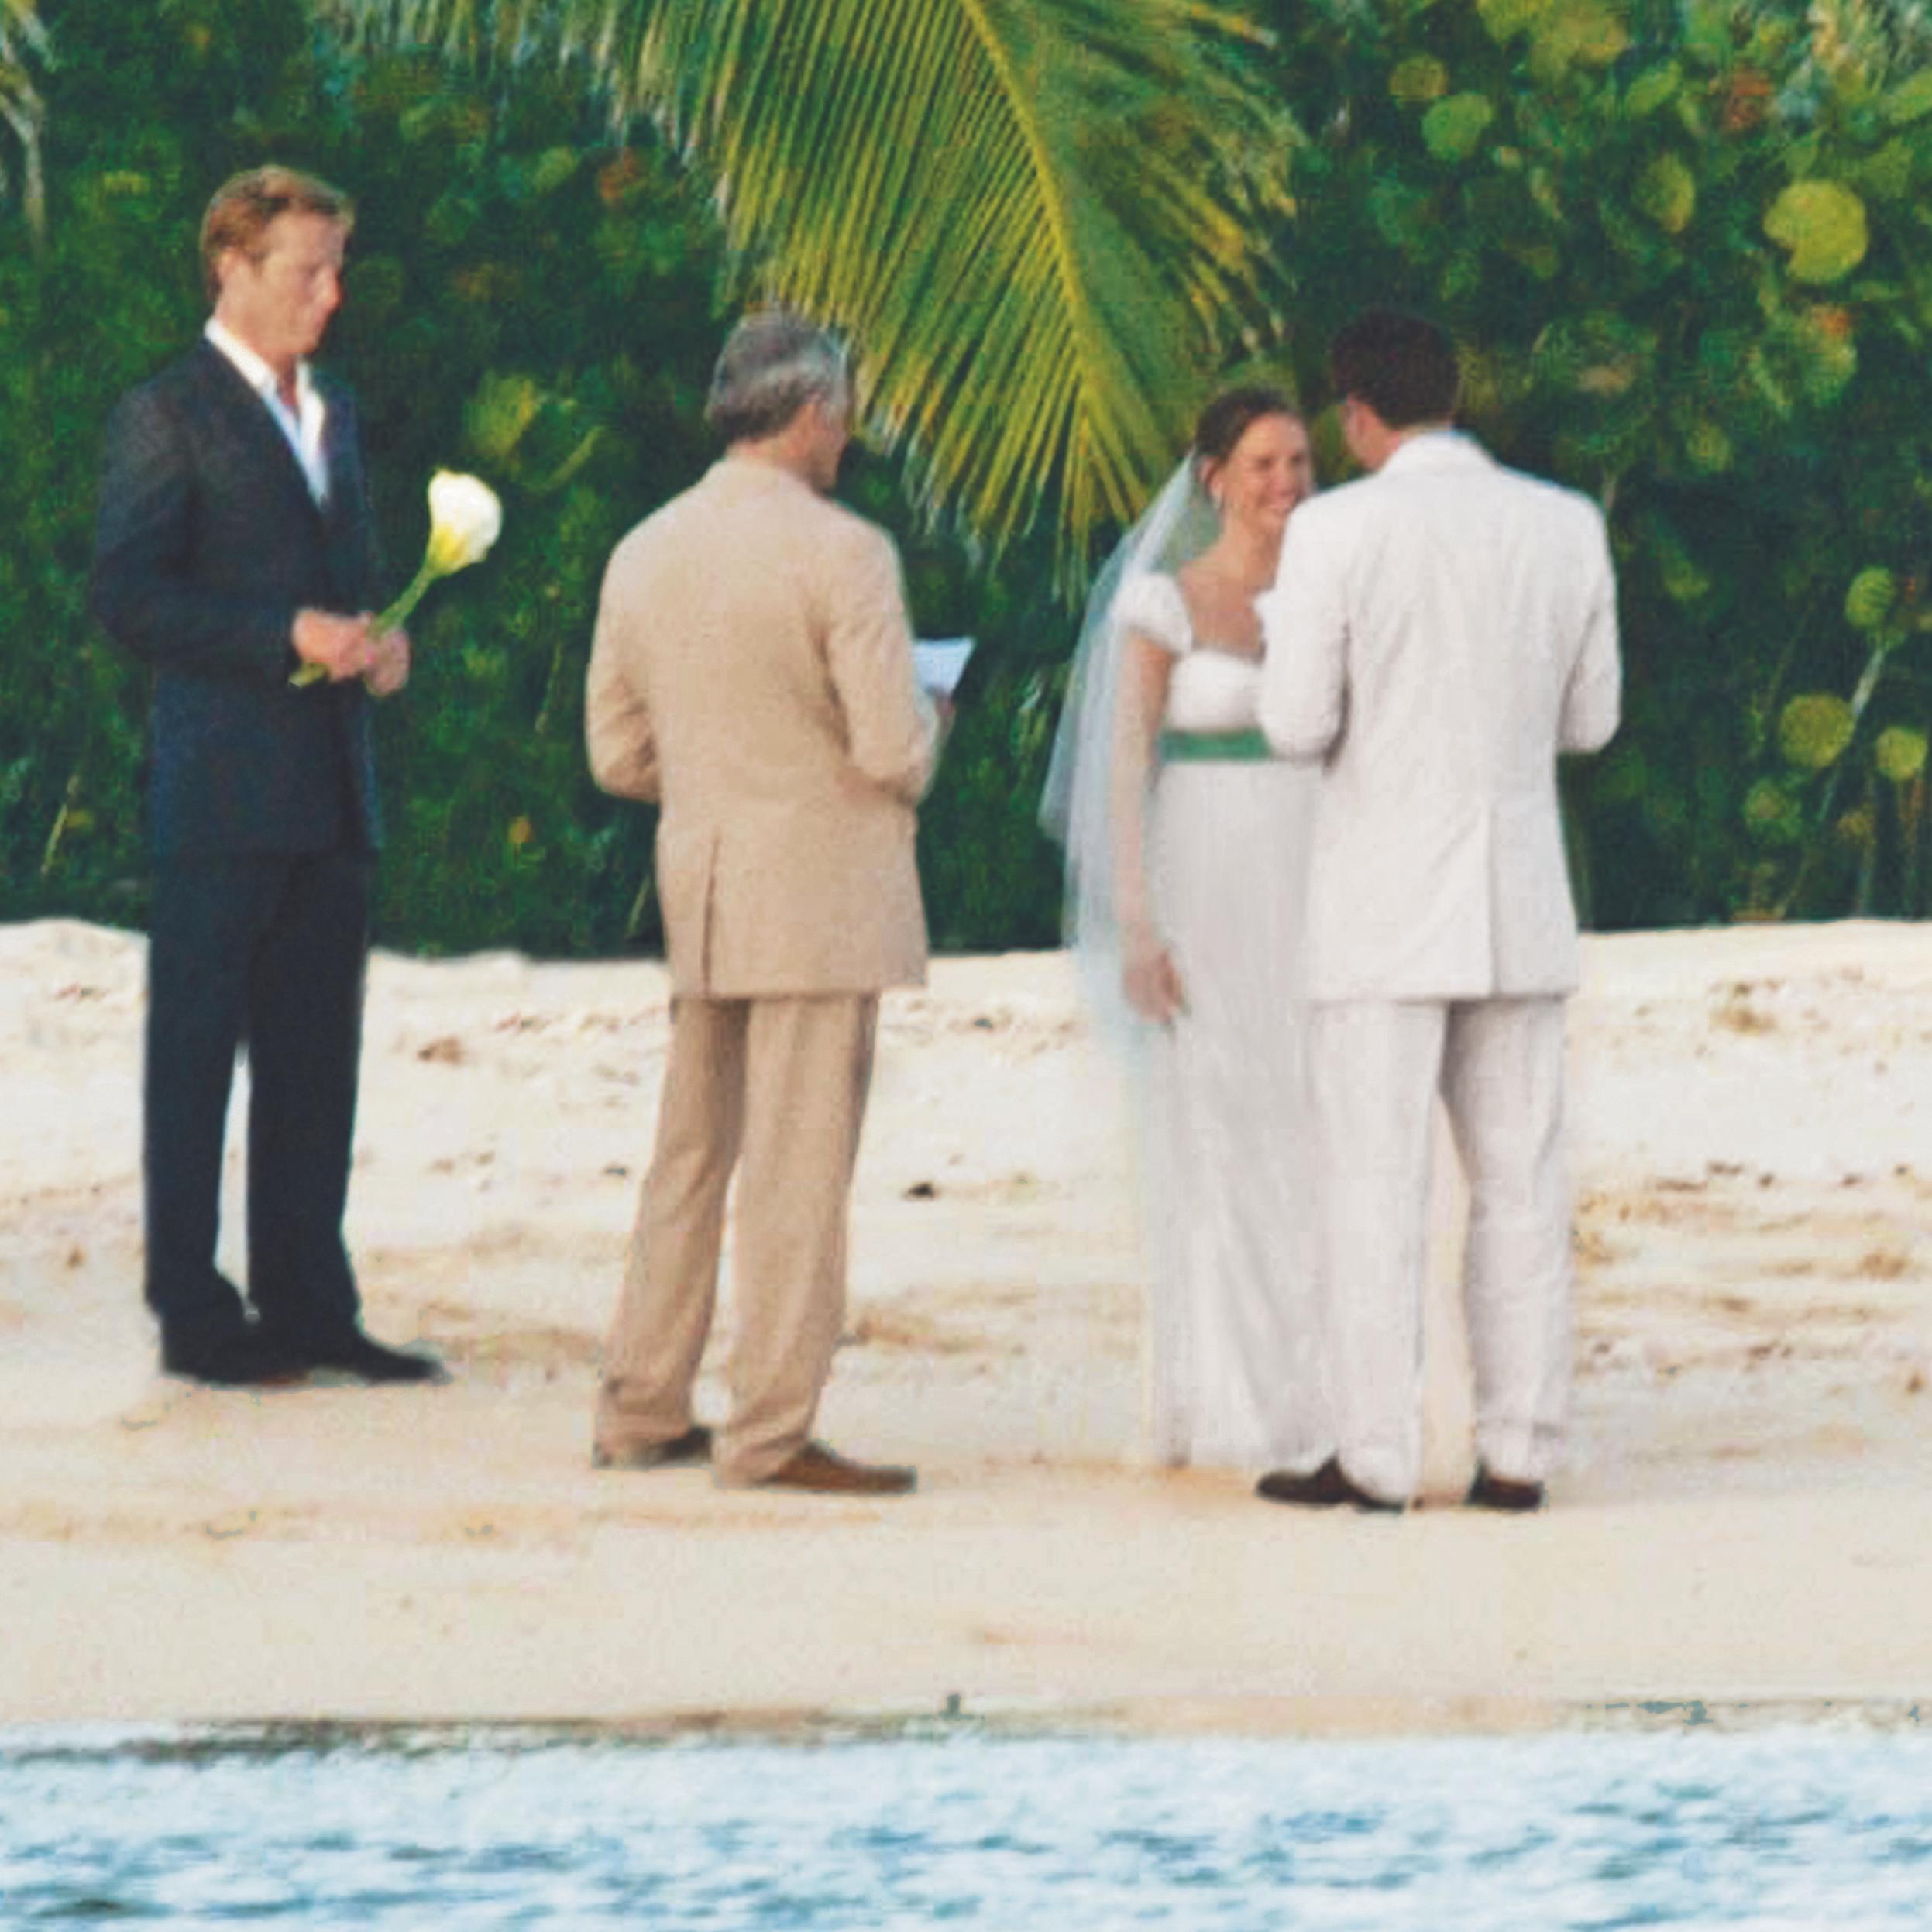 Unhappily Ever After: Ben Affleck & Jennifer Garner's Wedding Album Photos – A Look Back Before Their Divorce